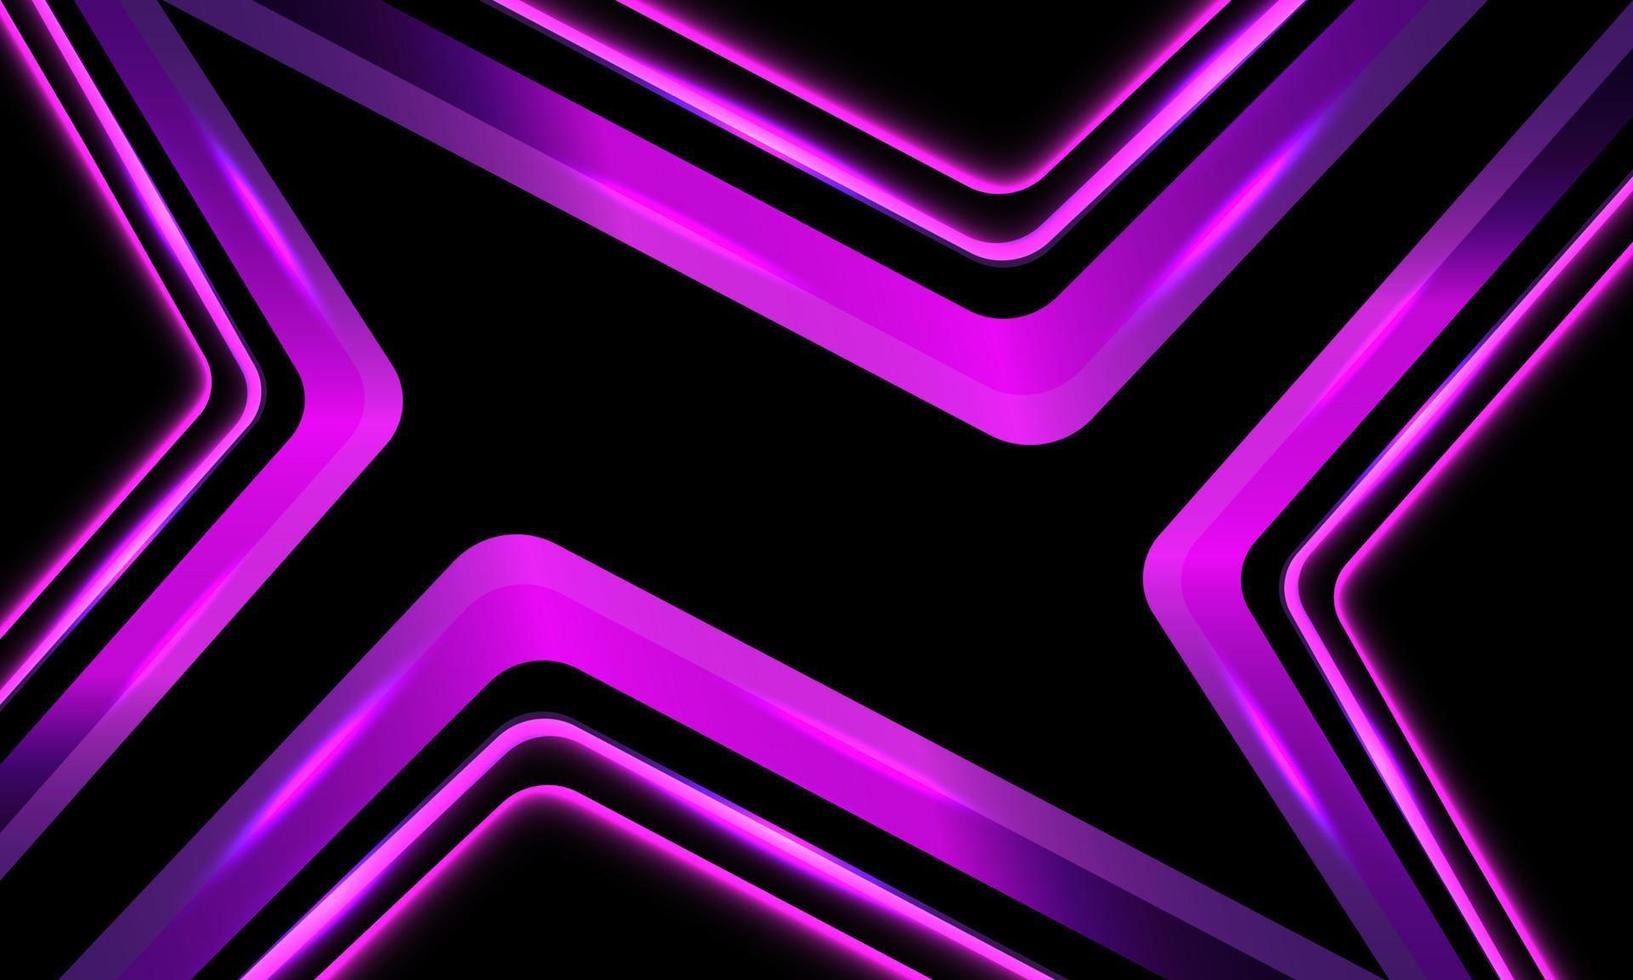 abstracte paarse licht geometrische curve op zwart ontwerp moderne futuristische technologie achtergrond vector